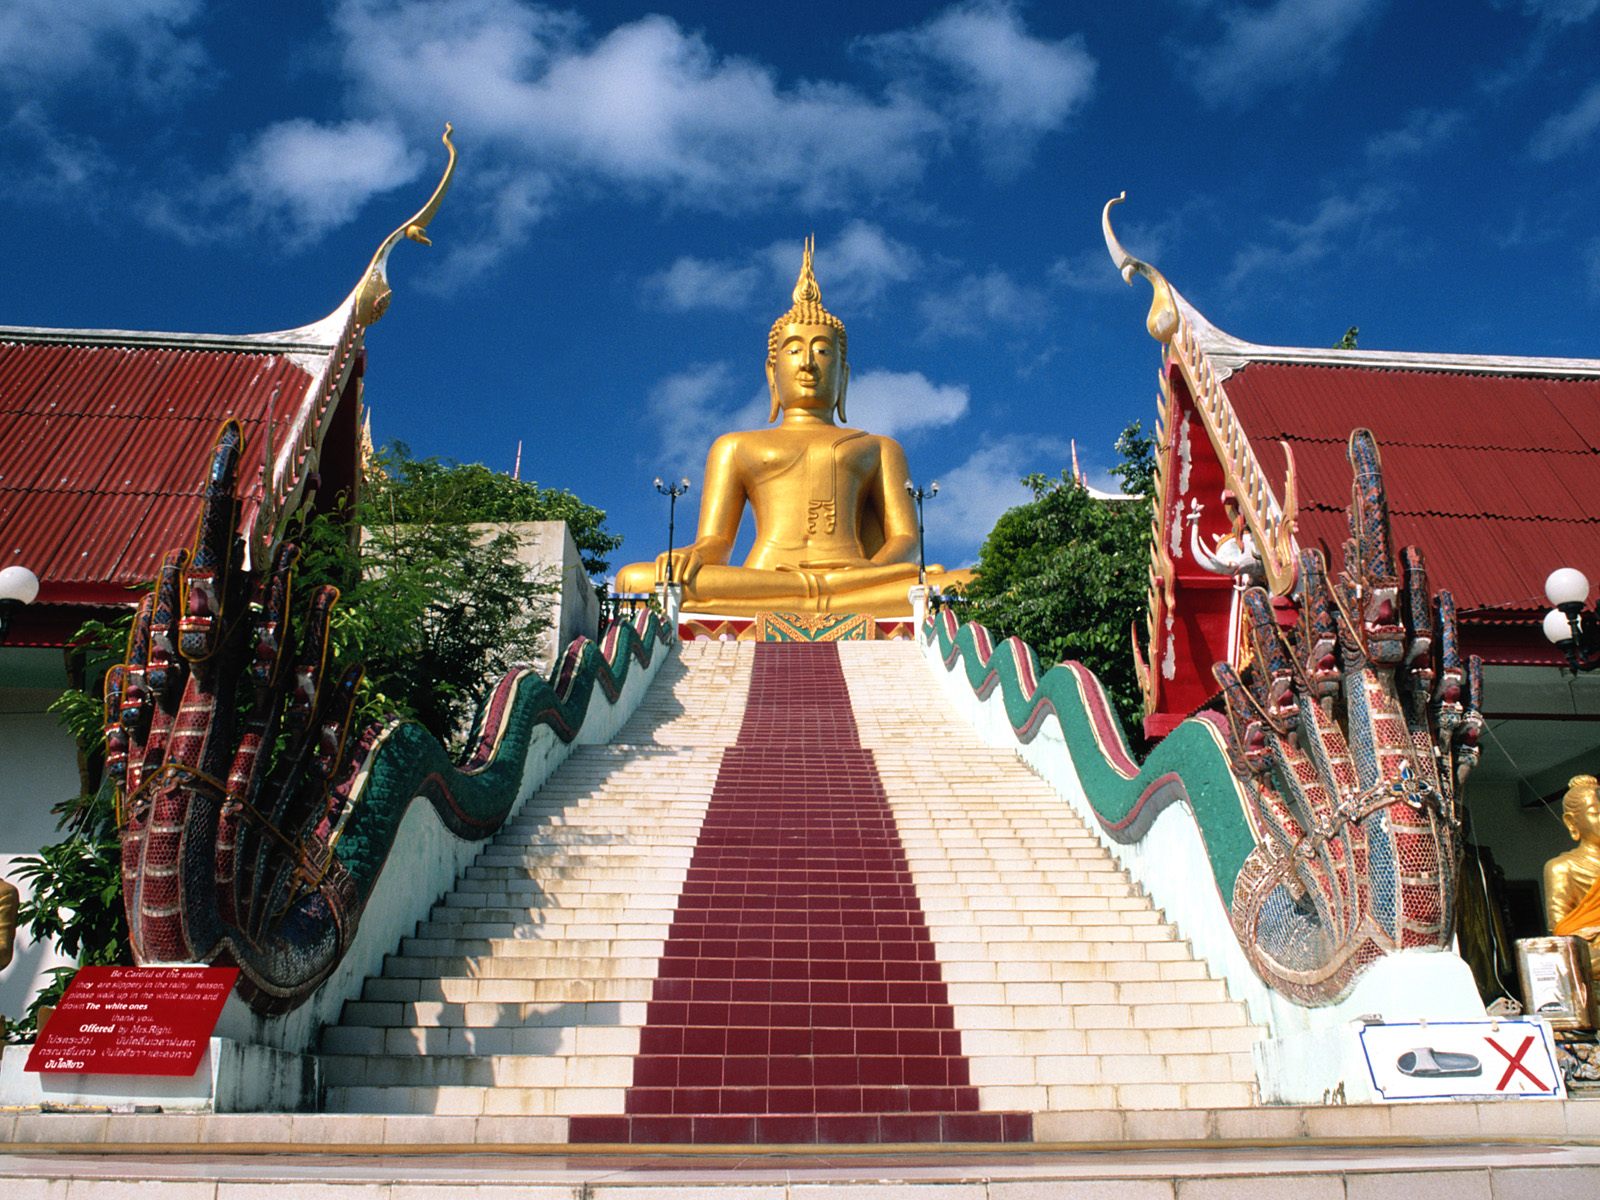 The Big Buddha Koh Samui Samui Island Thailand6575713135 - The Big Buddha Koh Samui Samui Island Thailand - Thailand, Samui, Island, Buddha